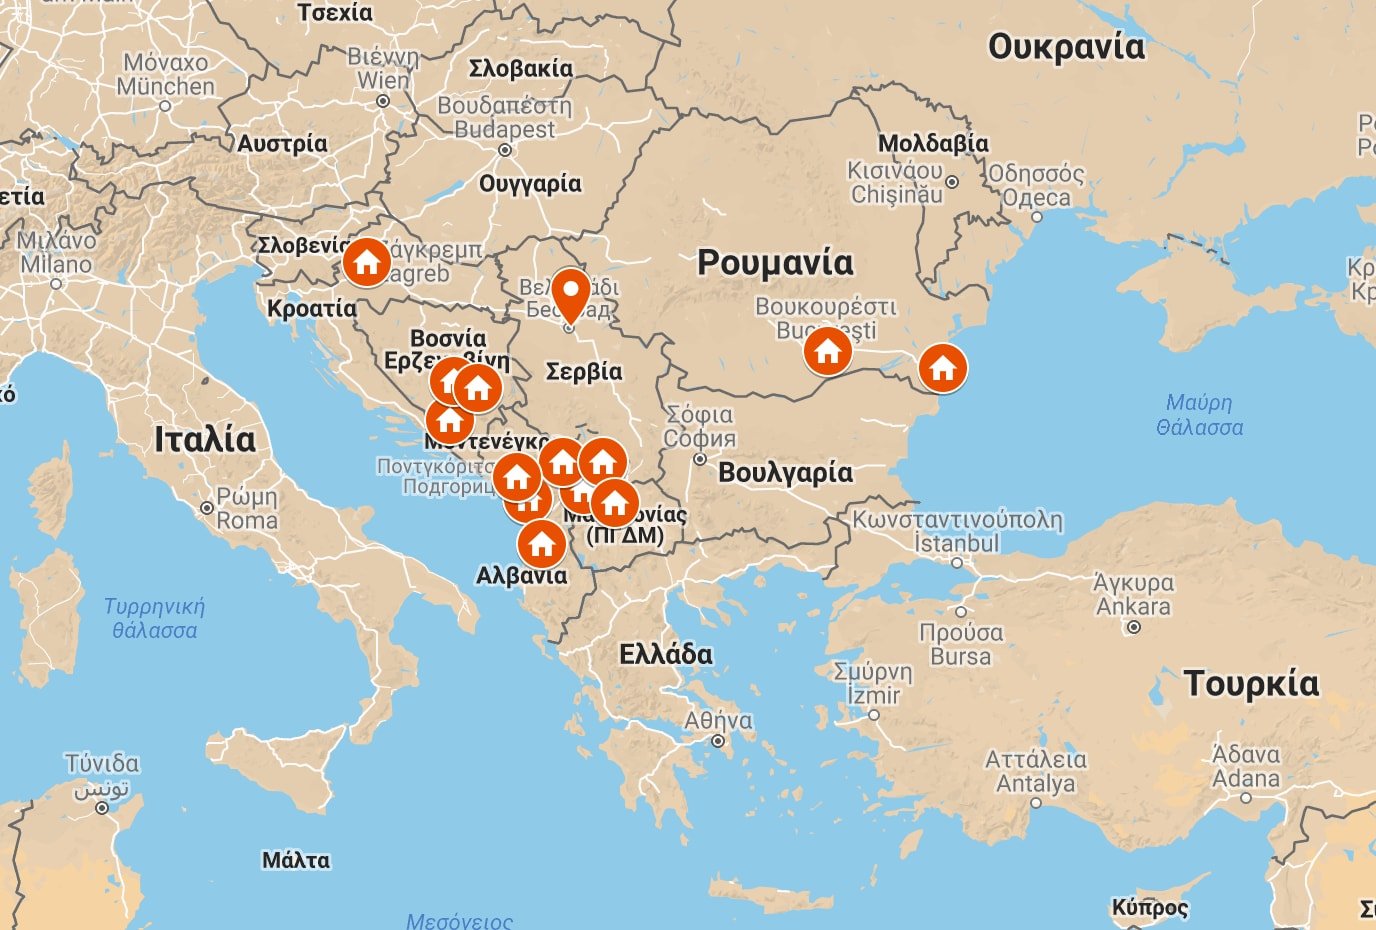 Οι Τούρκοι «περικυκλώνουν» την Ελλάδα: Μαζική οικονομική «εισβολή» σε Μαυροβούνιο, Κόσοβο, Αλβανία – Σχέδιο τουρκικής επέκτασης στα Βαλκάνια